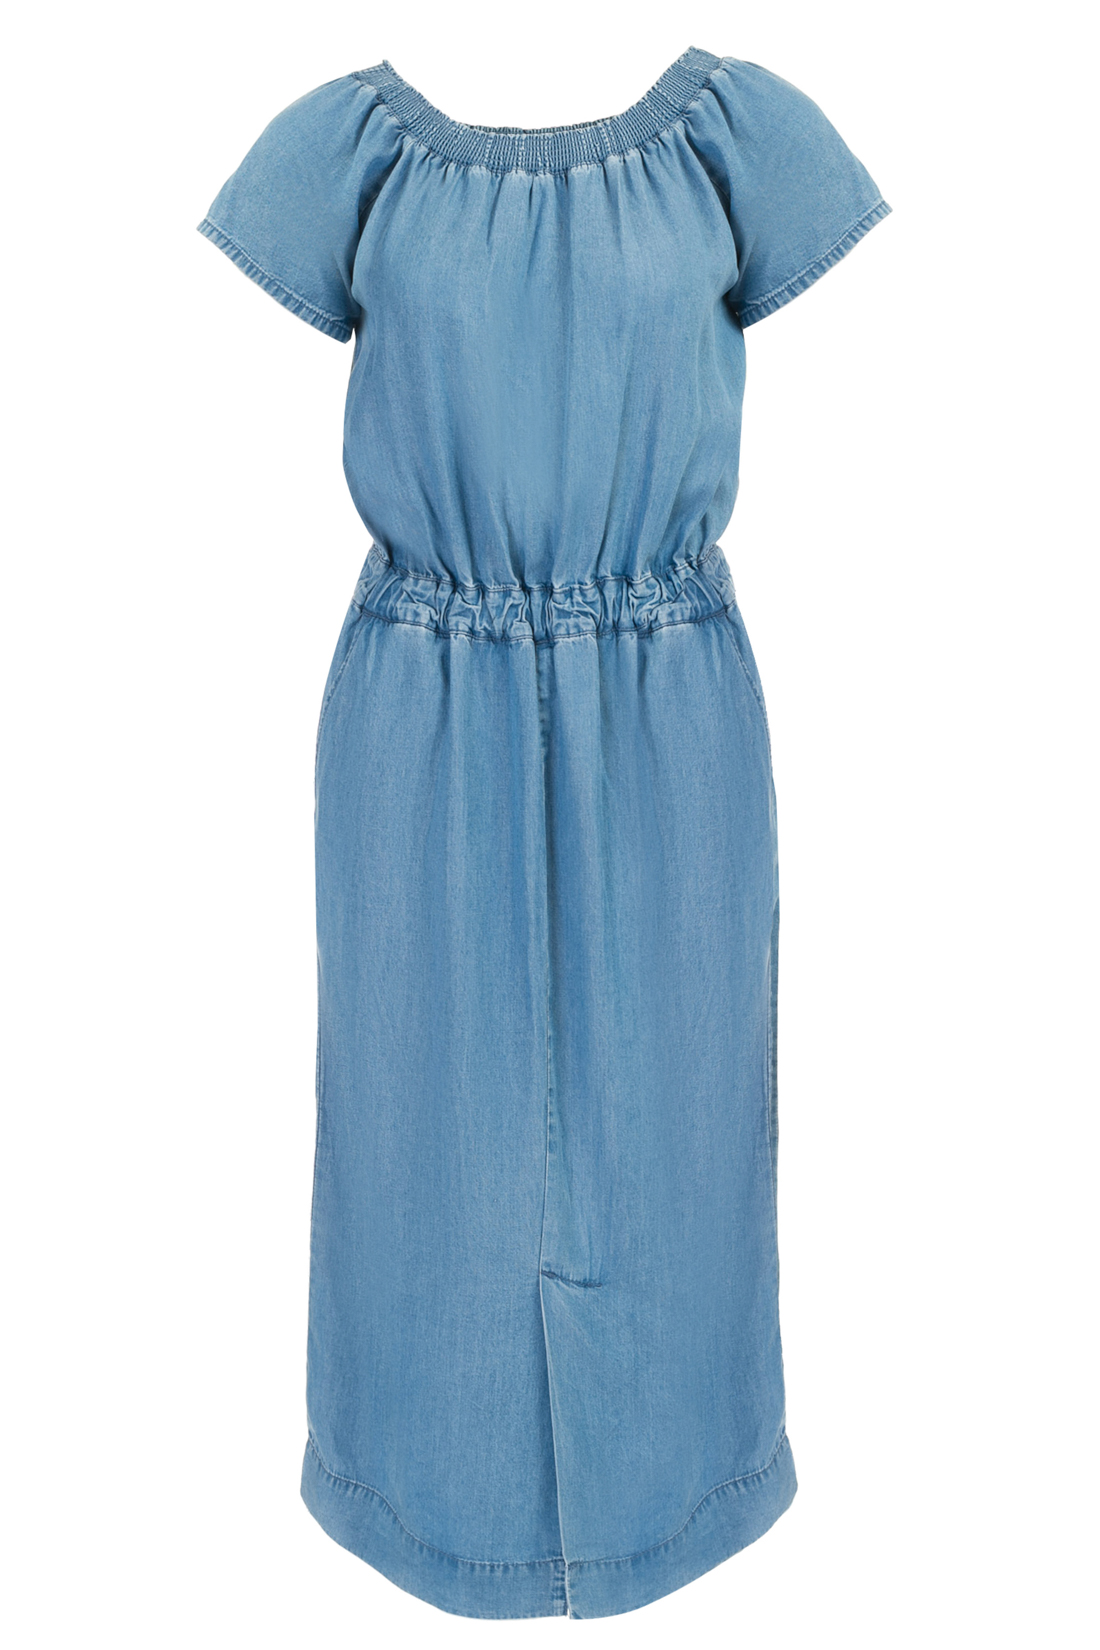 Платье с открытыми плечами из денима (арт. baon B457076), размер M, цвет light blue denim#голубой Платье с открытыми плечами из денима (арт. baon B457076) - фото 3